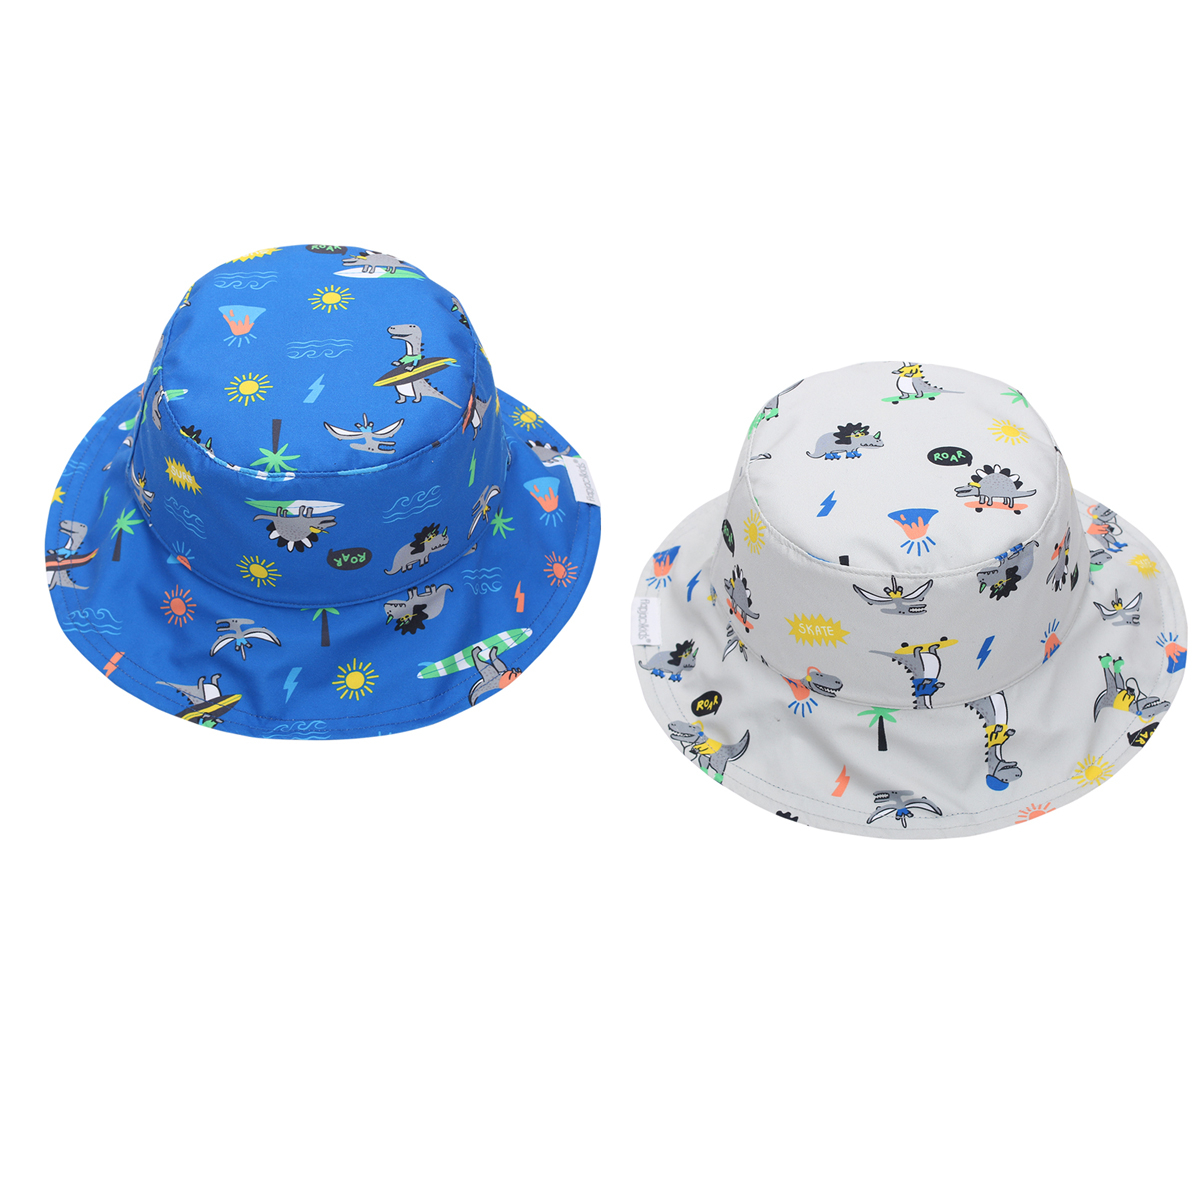 Παιδικό Καπέλο 2 Όψεων Με Προστασία UV FlapjackKids Dino 6-24 Μηνών 6-24 Μηνών